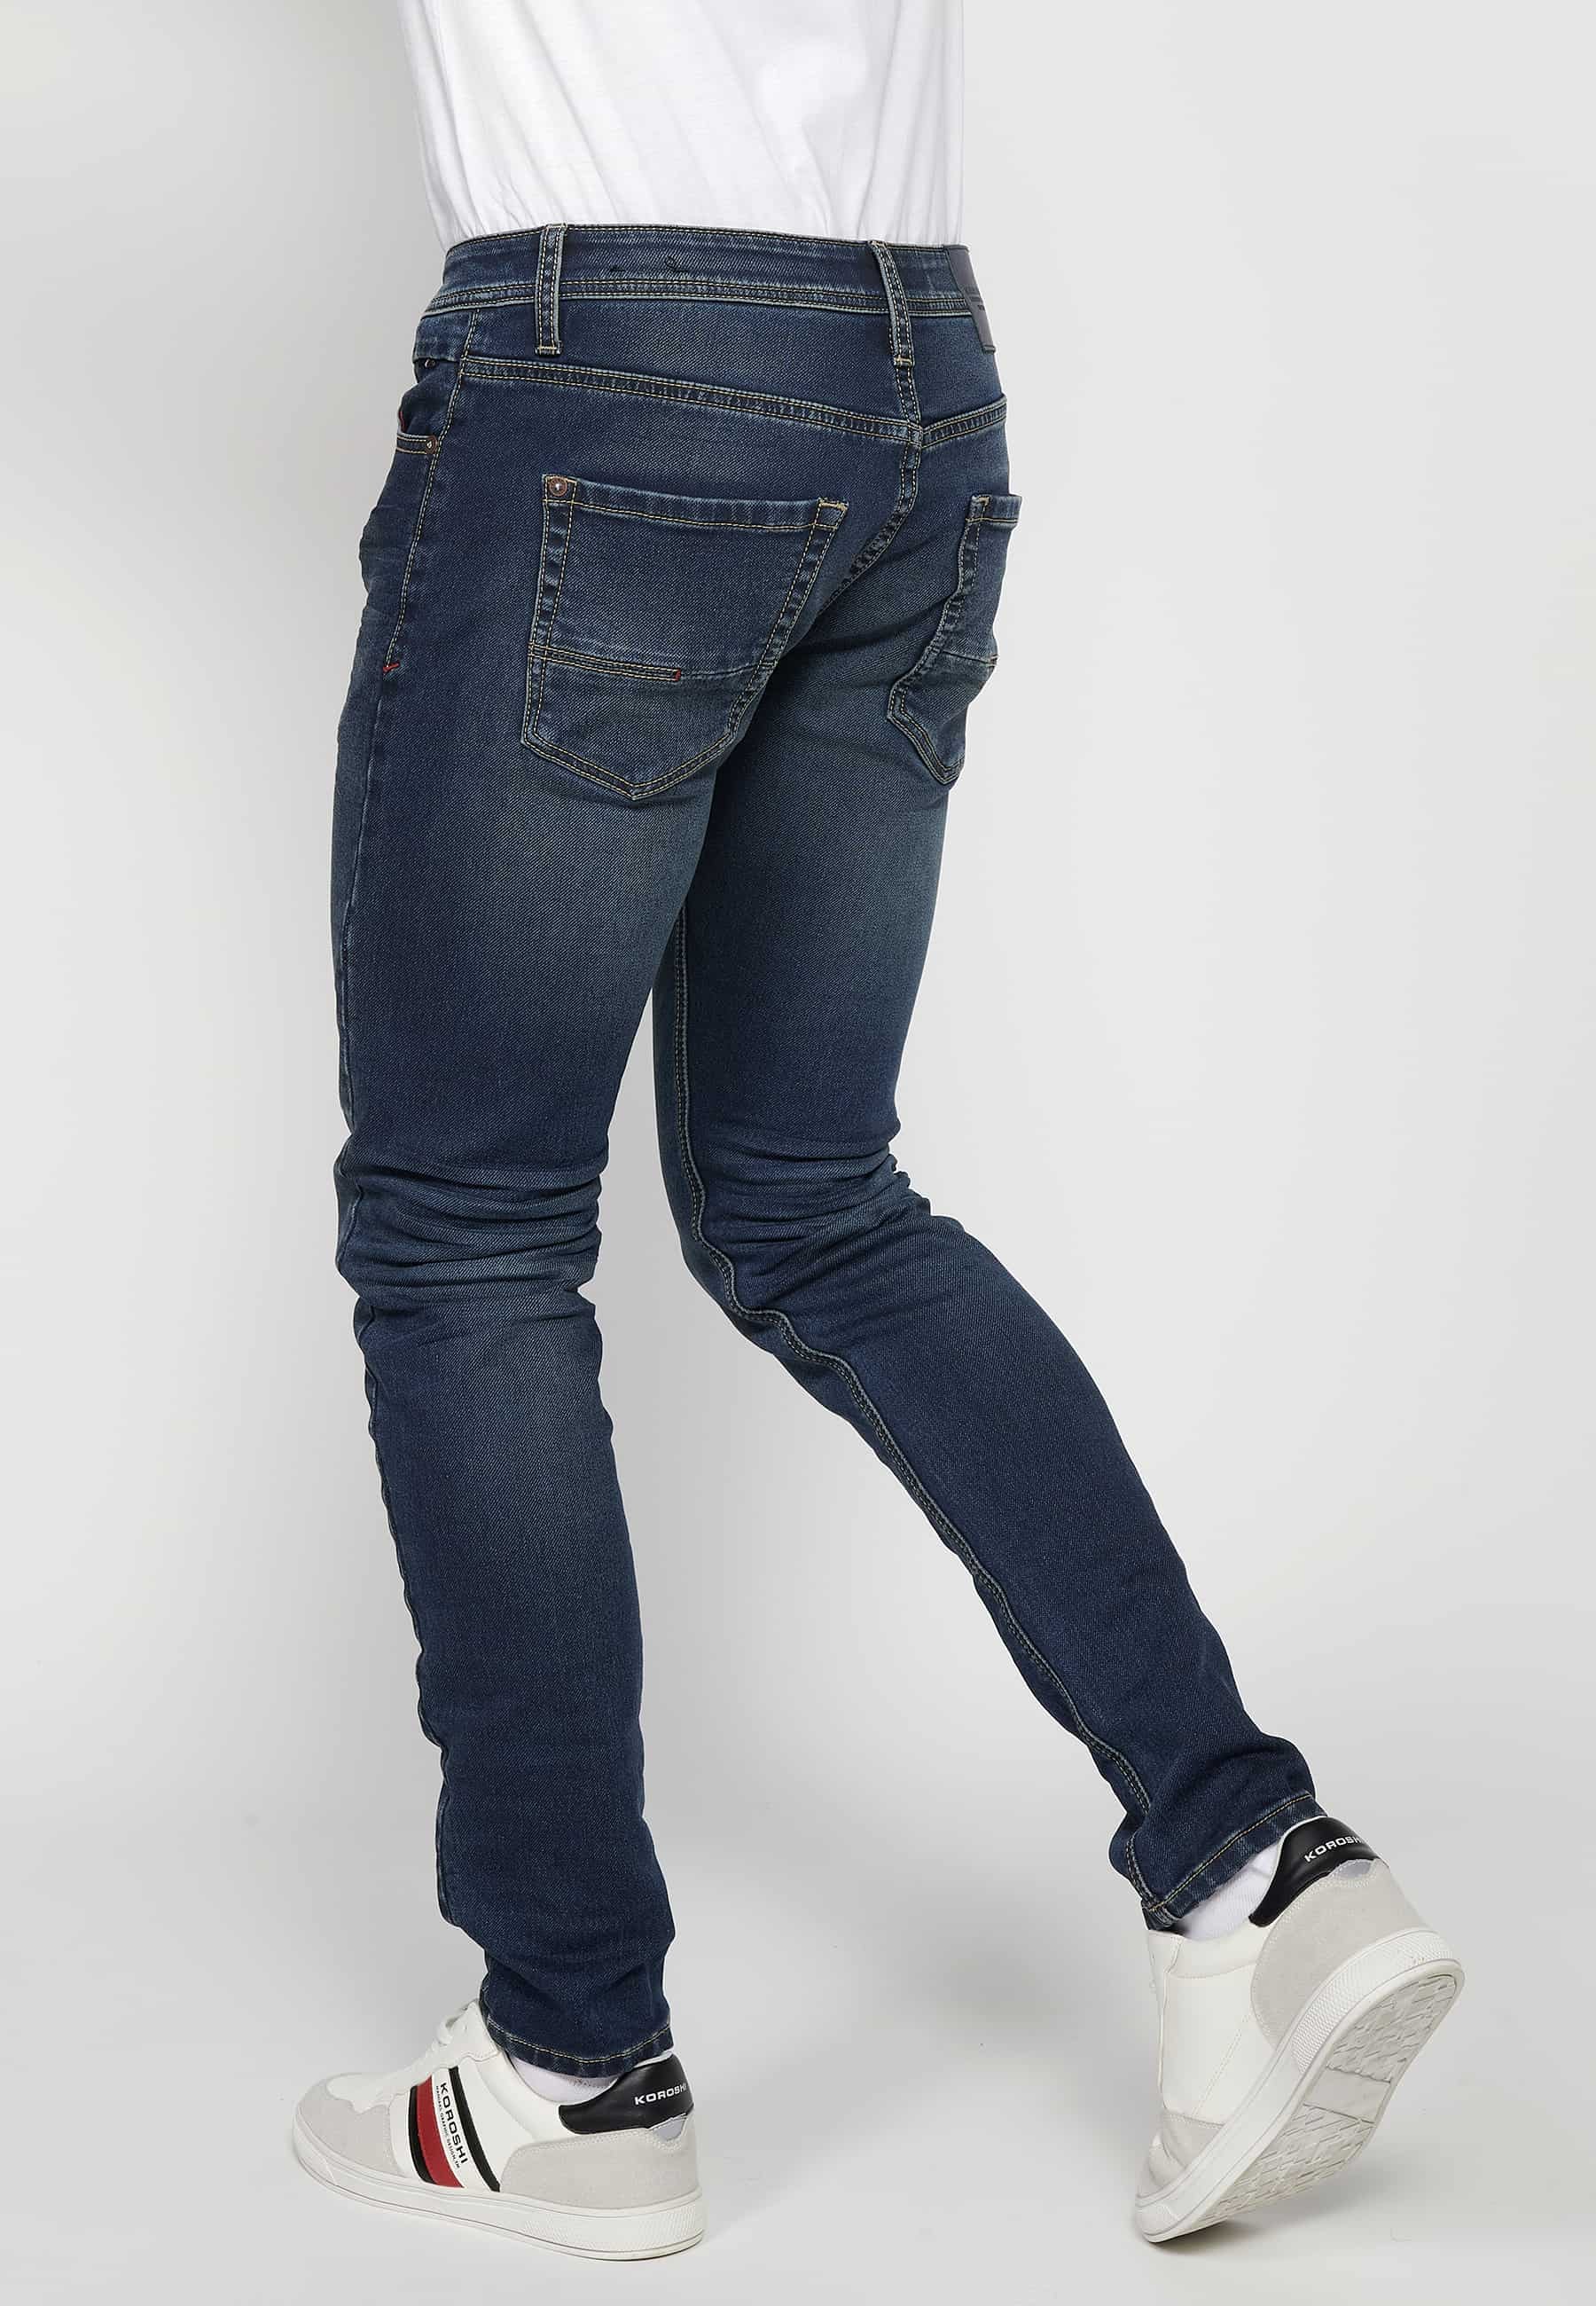 Pantalons llargs Jeans slim fit amb Tancament davanter amb cremallera i botó amb Cinc butxaques, un ceriller de Color Blau per a Home 6